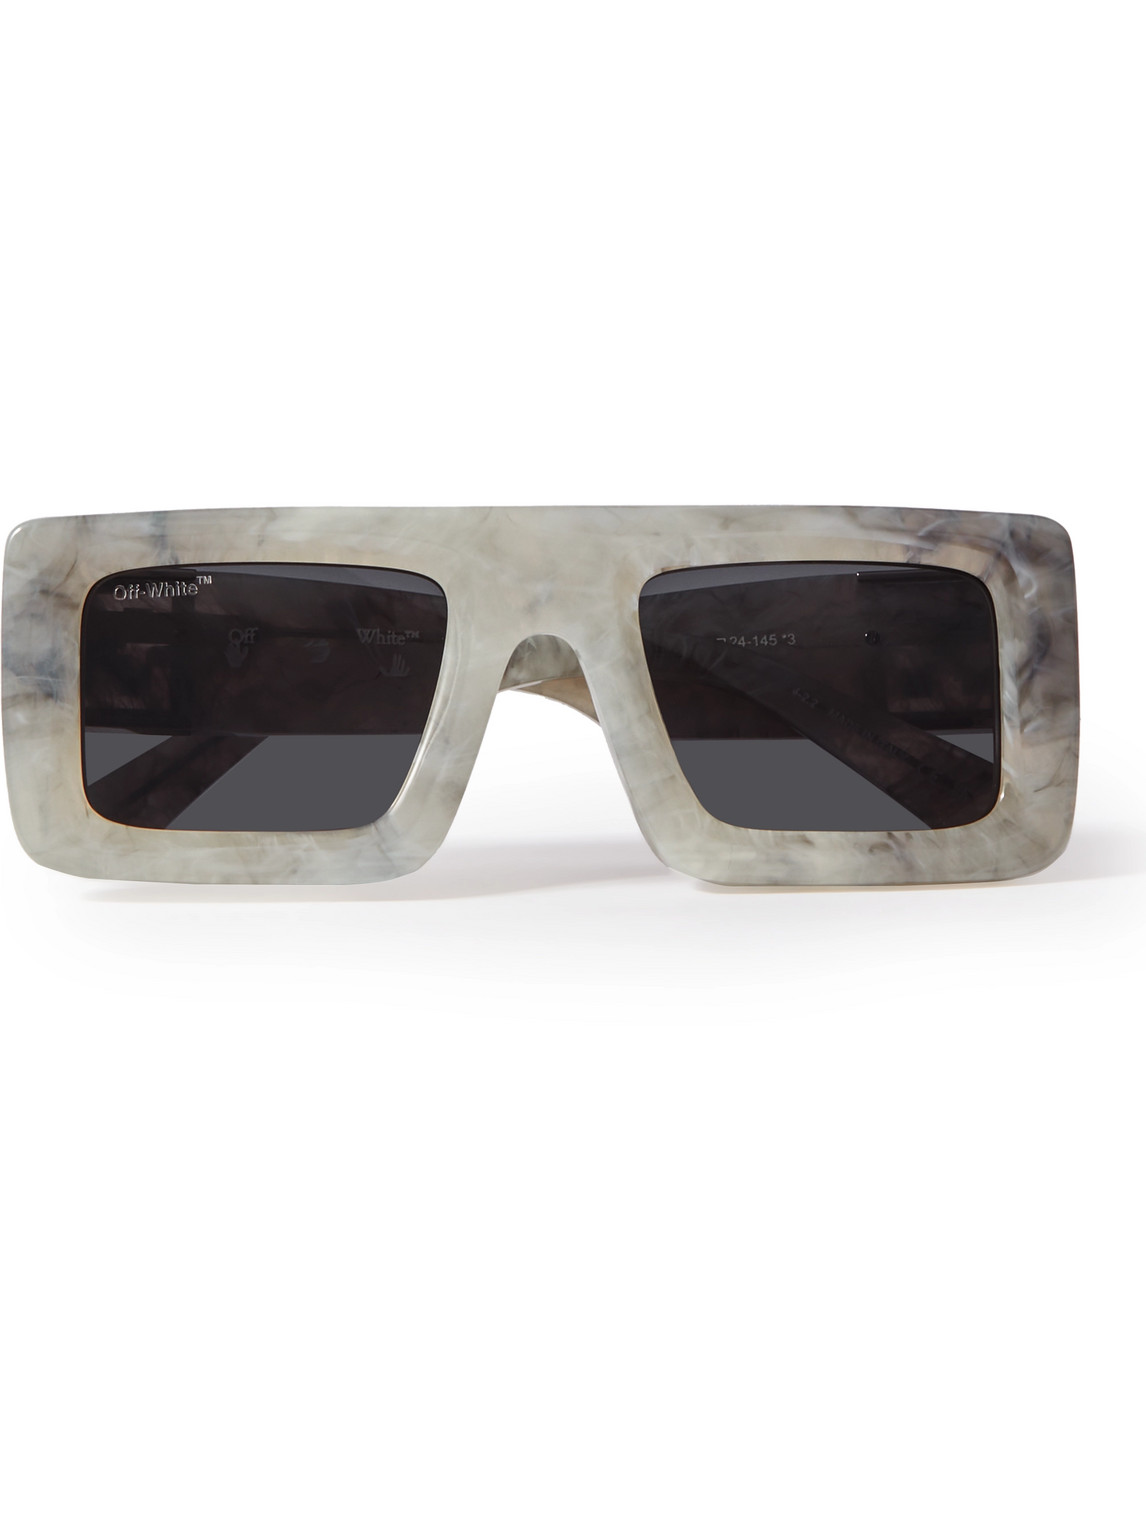 Off-White Men's Lecce Acetate Rectangle Sunglasses